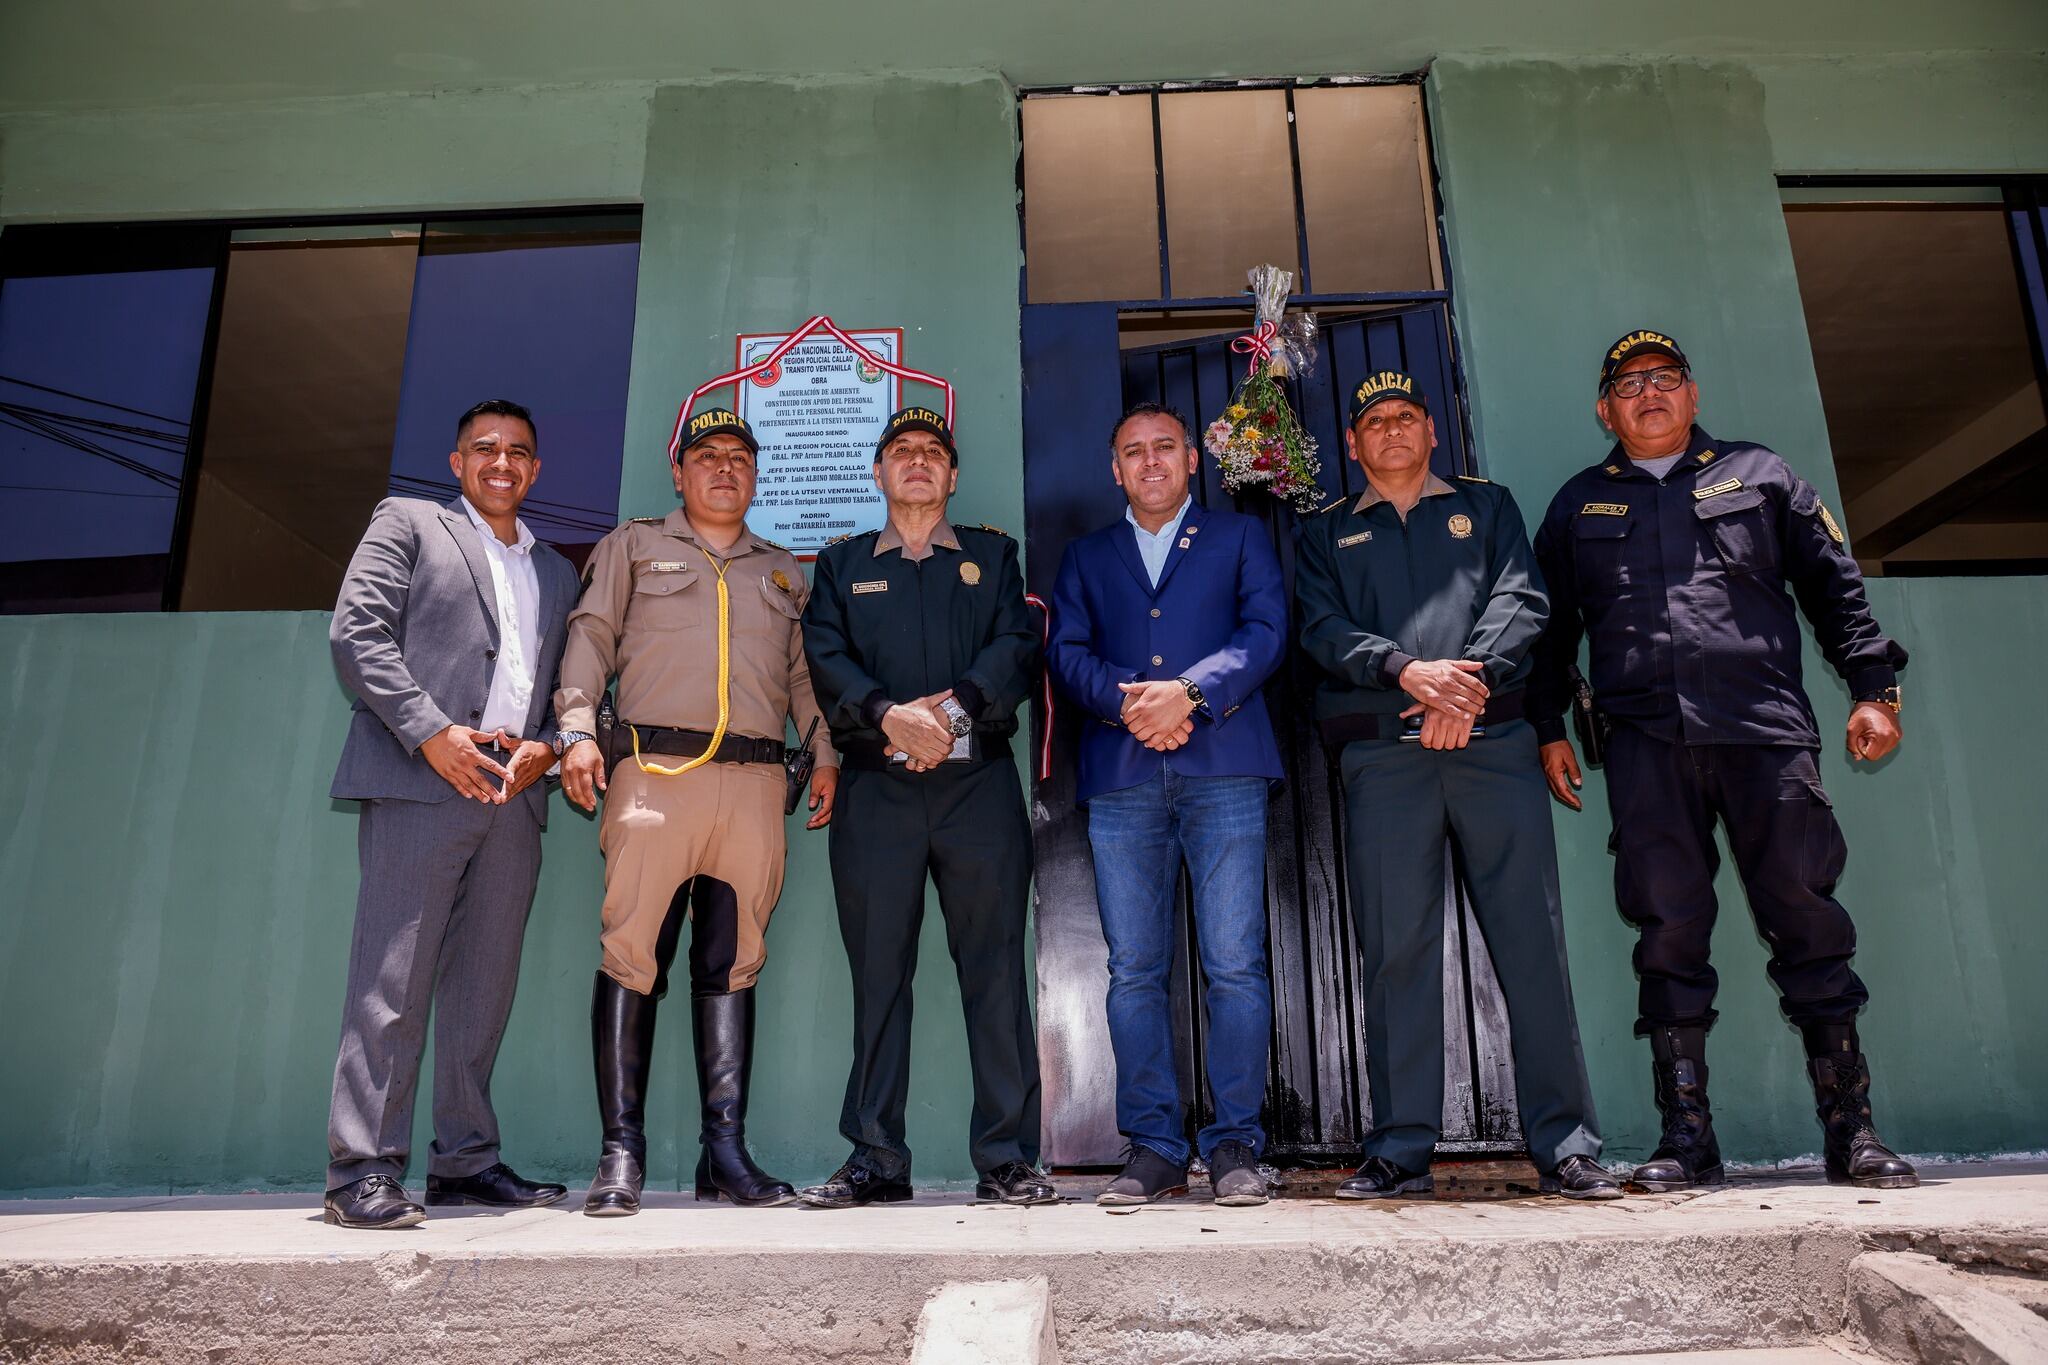 El alcalde Jhovinson Vásquez asegura que la principal estrategia en su distrito es trabajar de la mano con la Policía Nacional en la lucha contra la delincuencia. (Foto: Municipalidad de Ventanilla - Facebook)